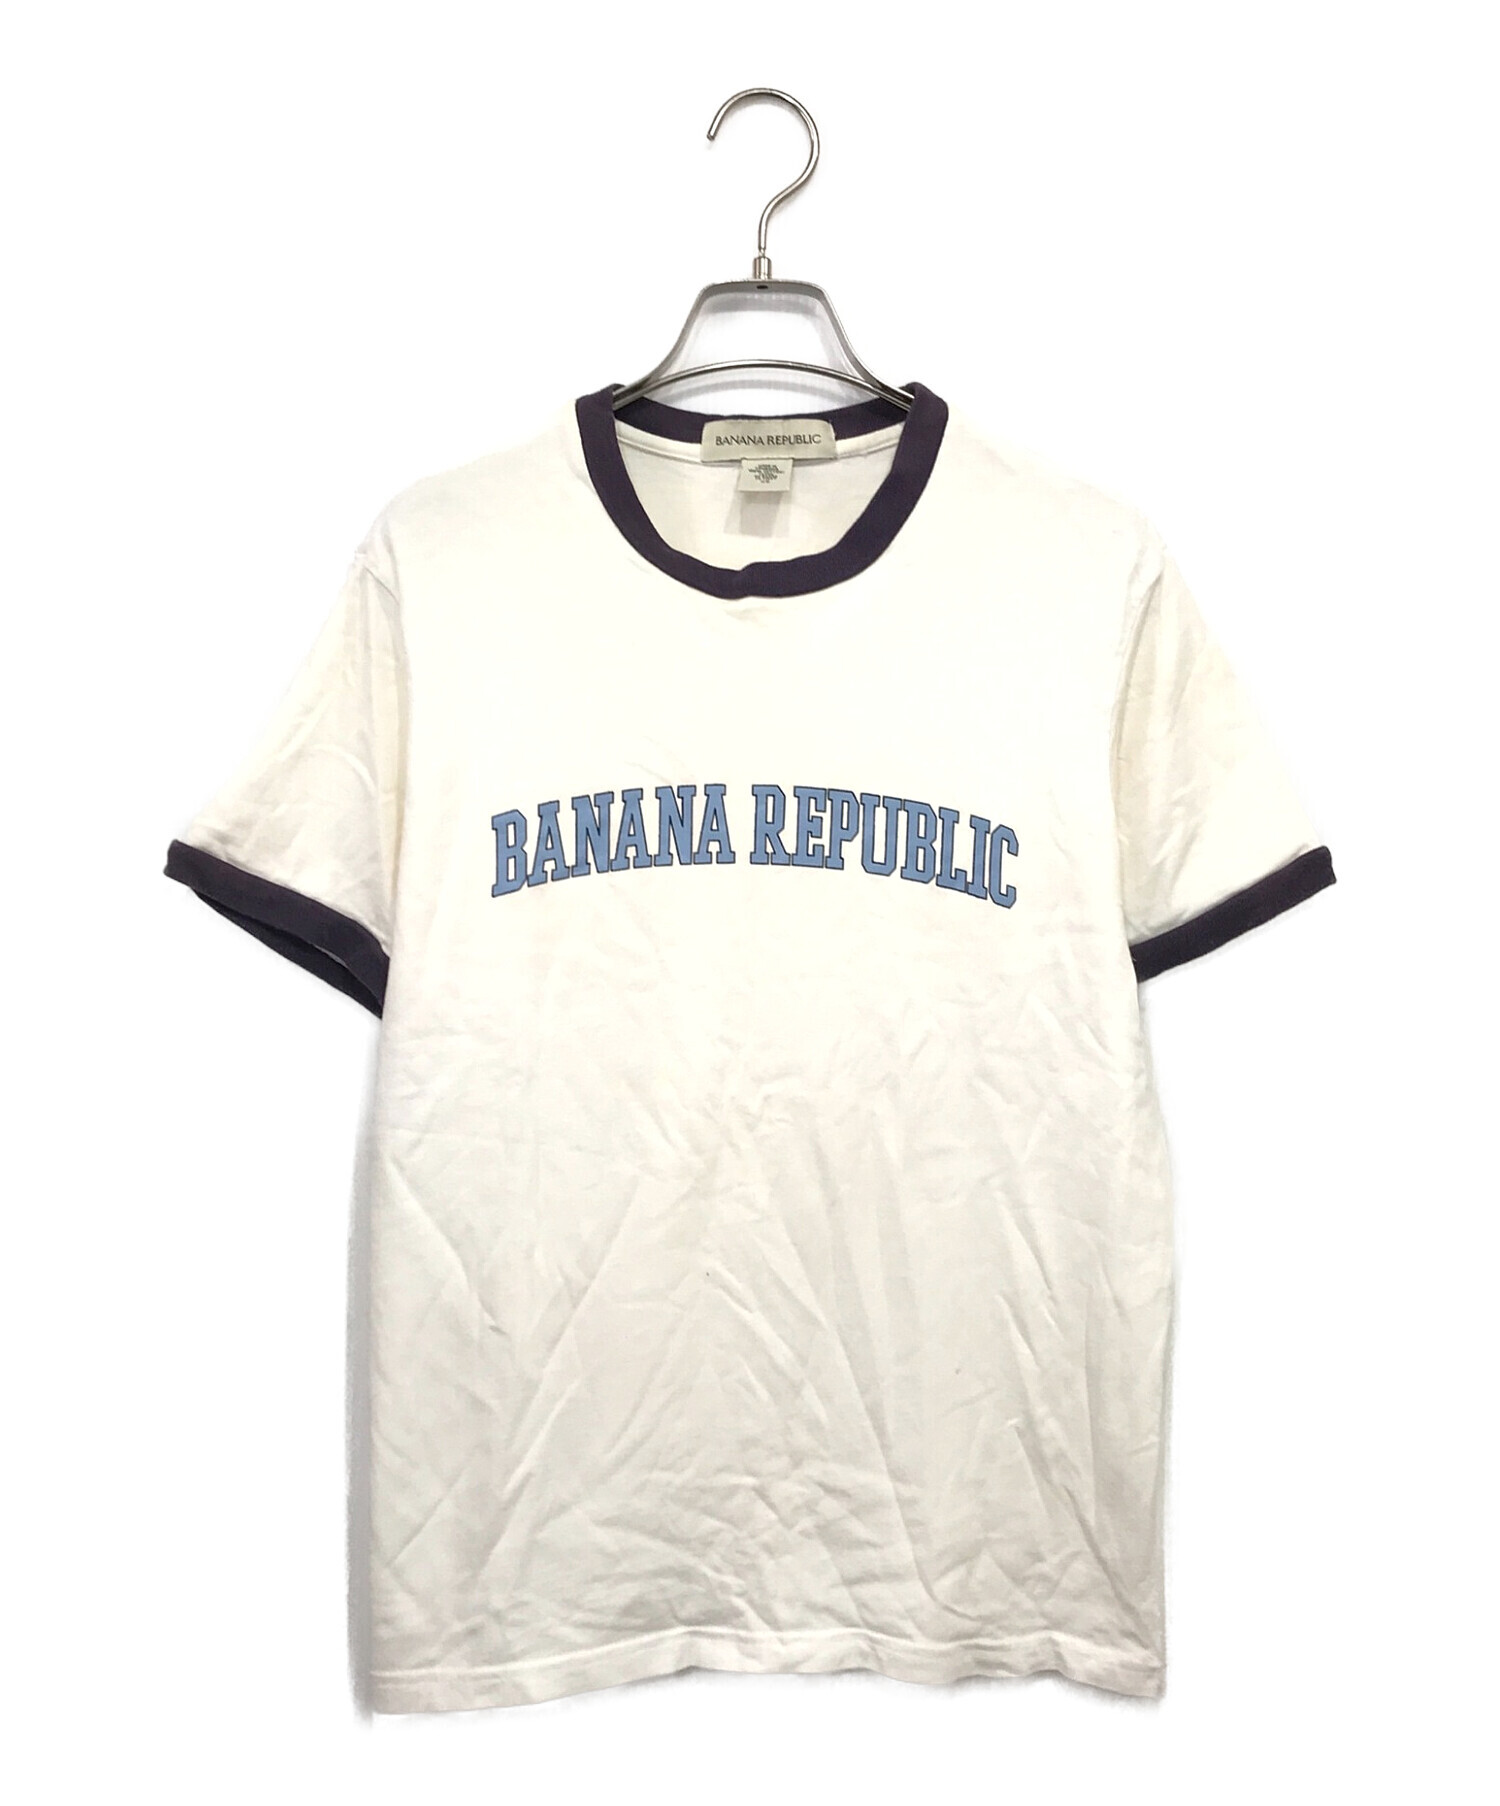 BANANA REPUBLIC (バナナリパブリック) 90‘SリンガーTシャツ ホワイト サイズ:XS